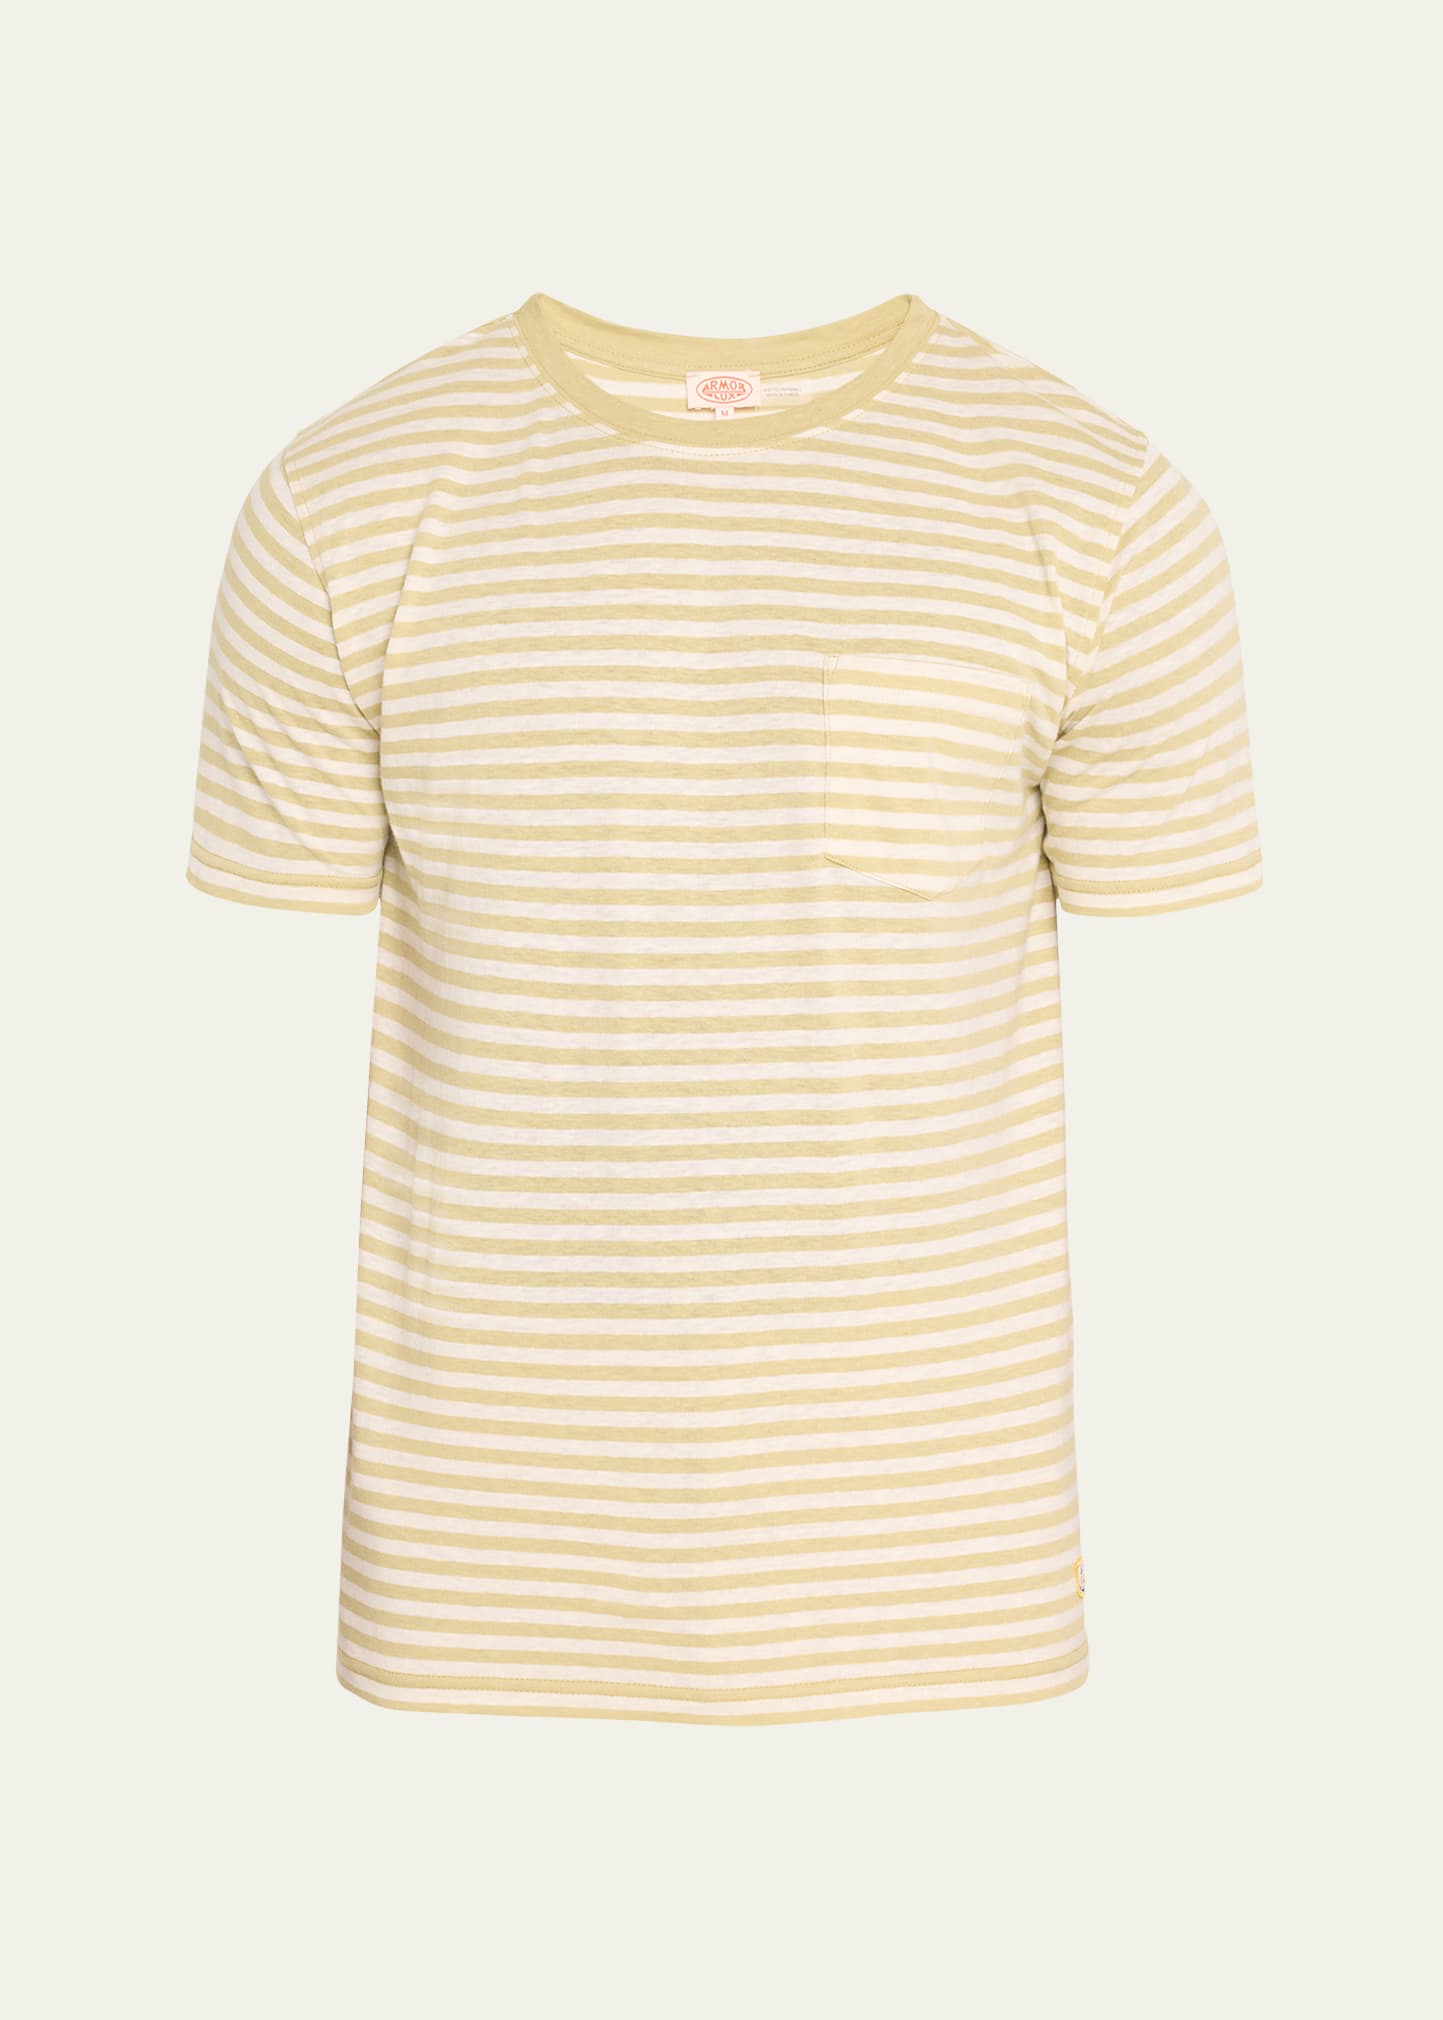 Armor Lux Men's Heritage Striped Cotton-Linen T-Shirt